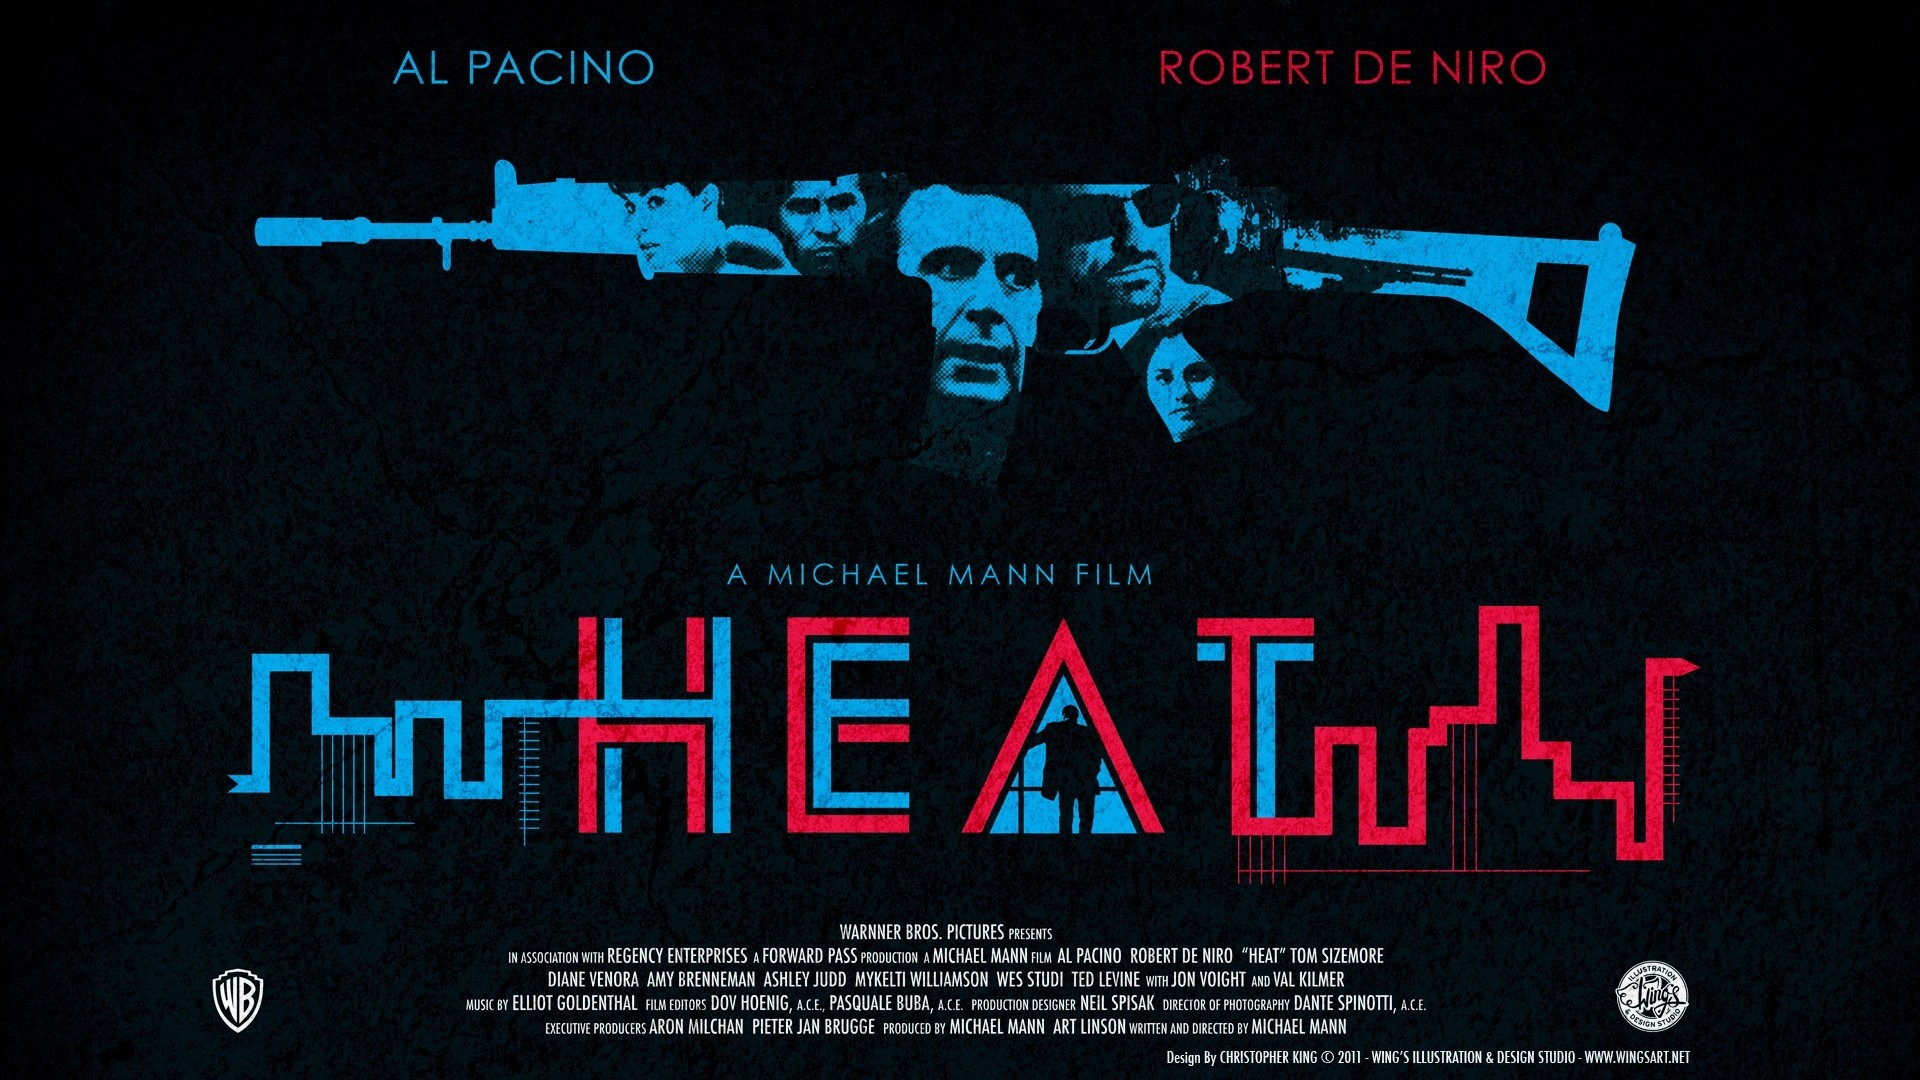 General 1920x1080 heat Heat (movie) Al Pacino Robert de Niro movies Warner Brothers